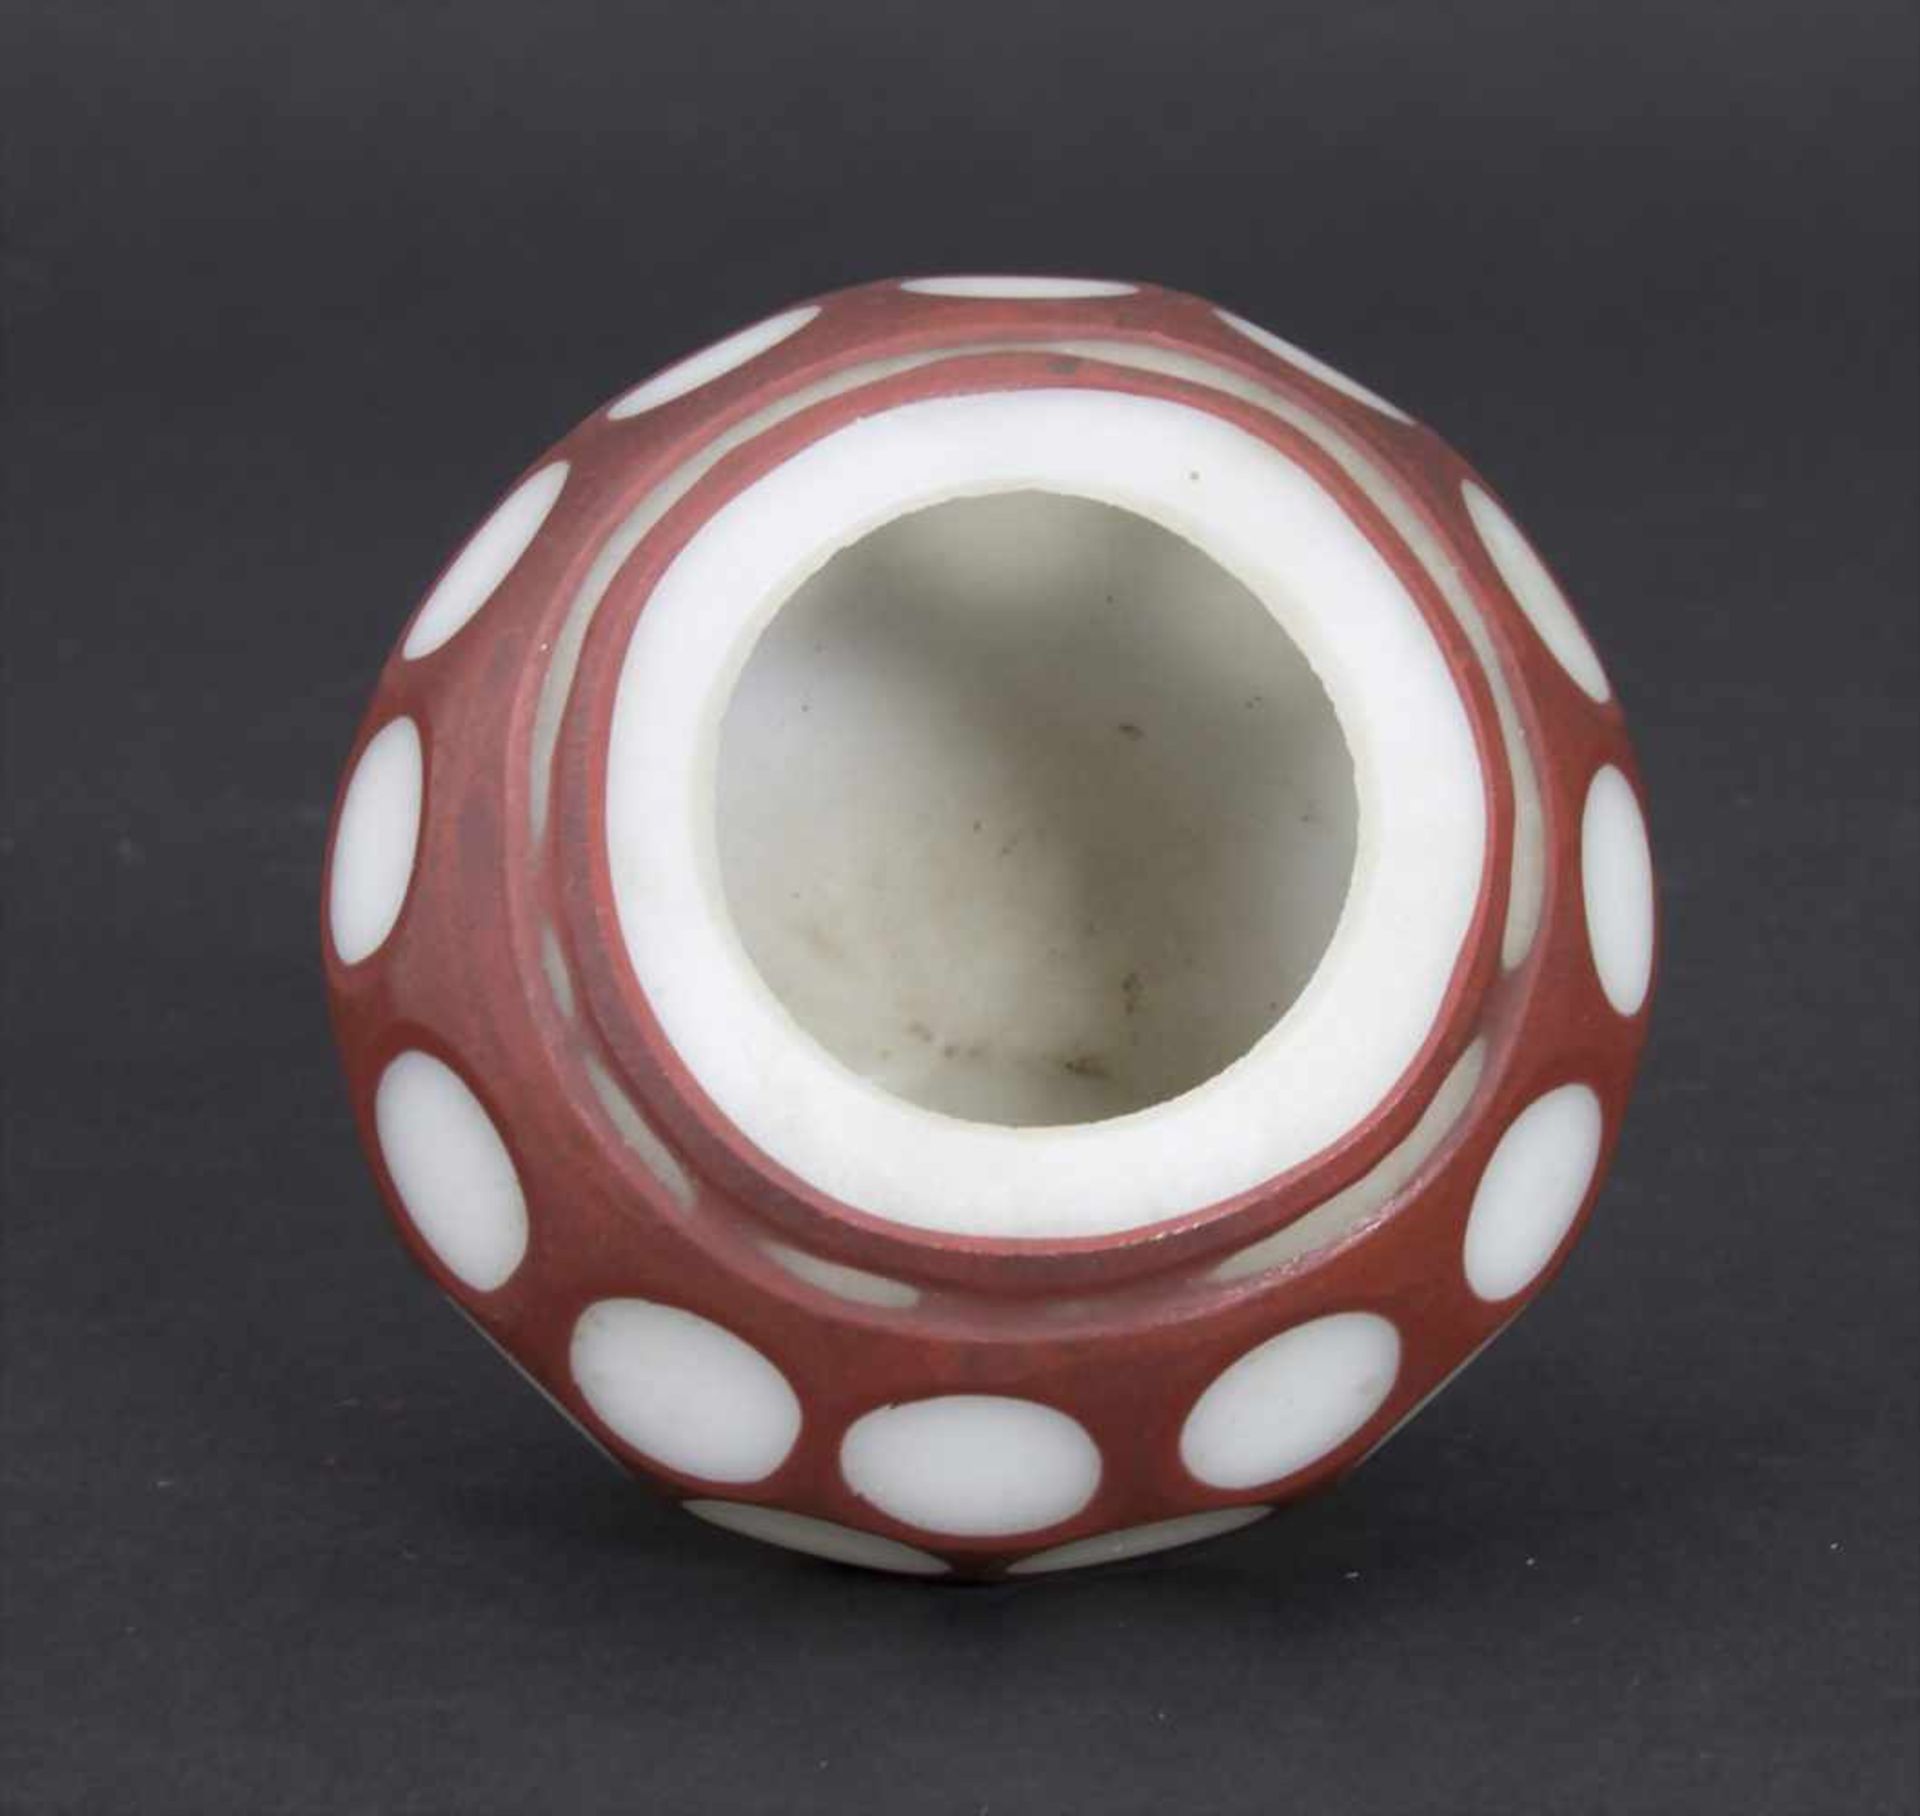 Miniatur-Ziervase, China, 18./19. Jh.Material: opakweiß und rotbraun überfangenes Glas, Wandung - Bild 2 aus 5